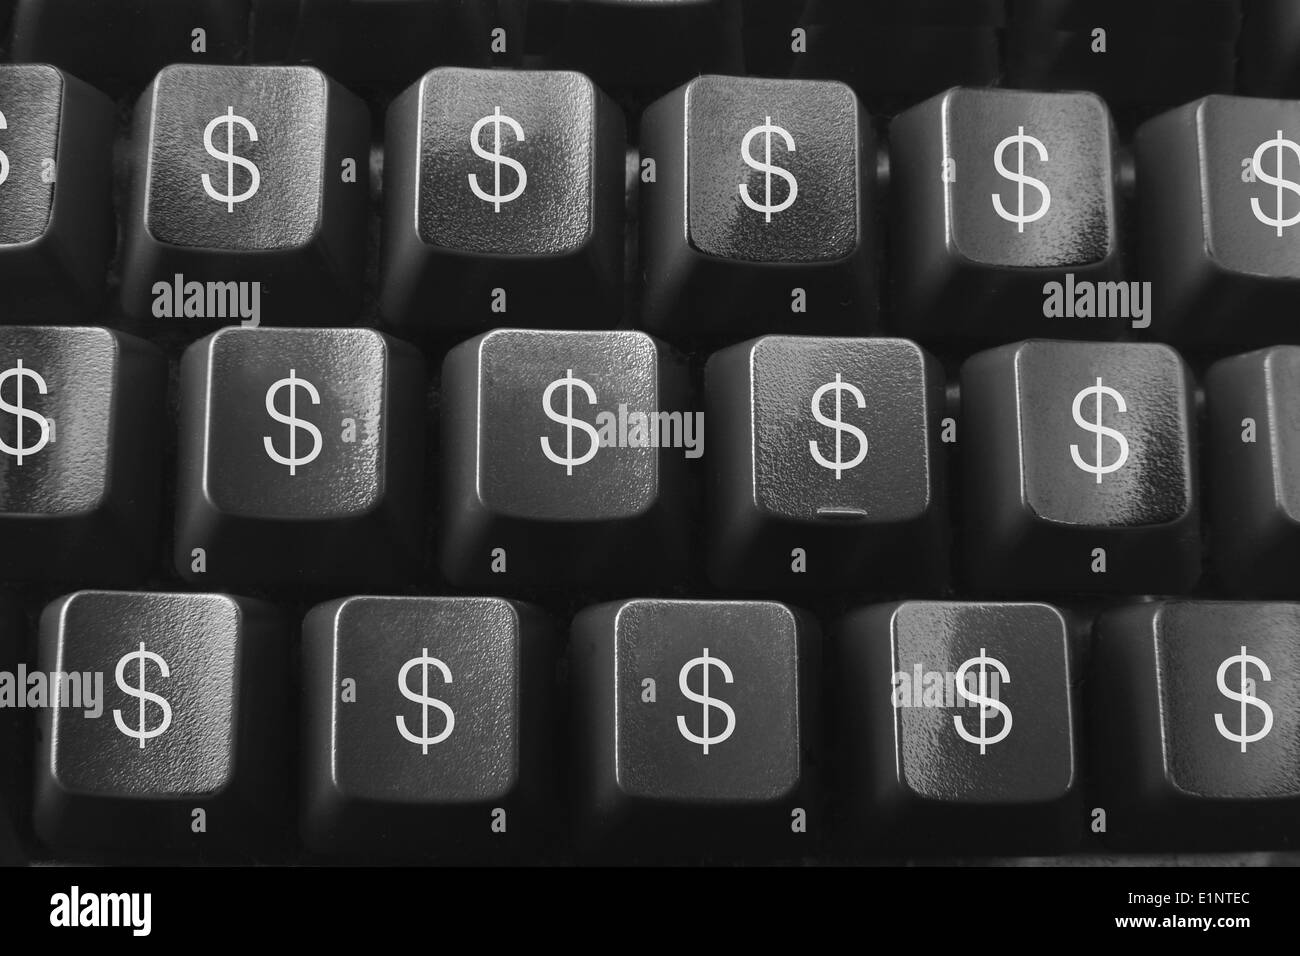 Computer-Tastatur mit Dollar-Zeichen Stockfotografie - Alamy